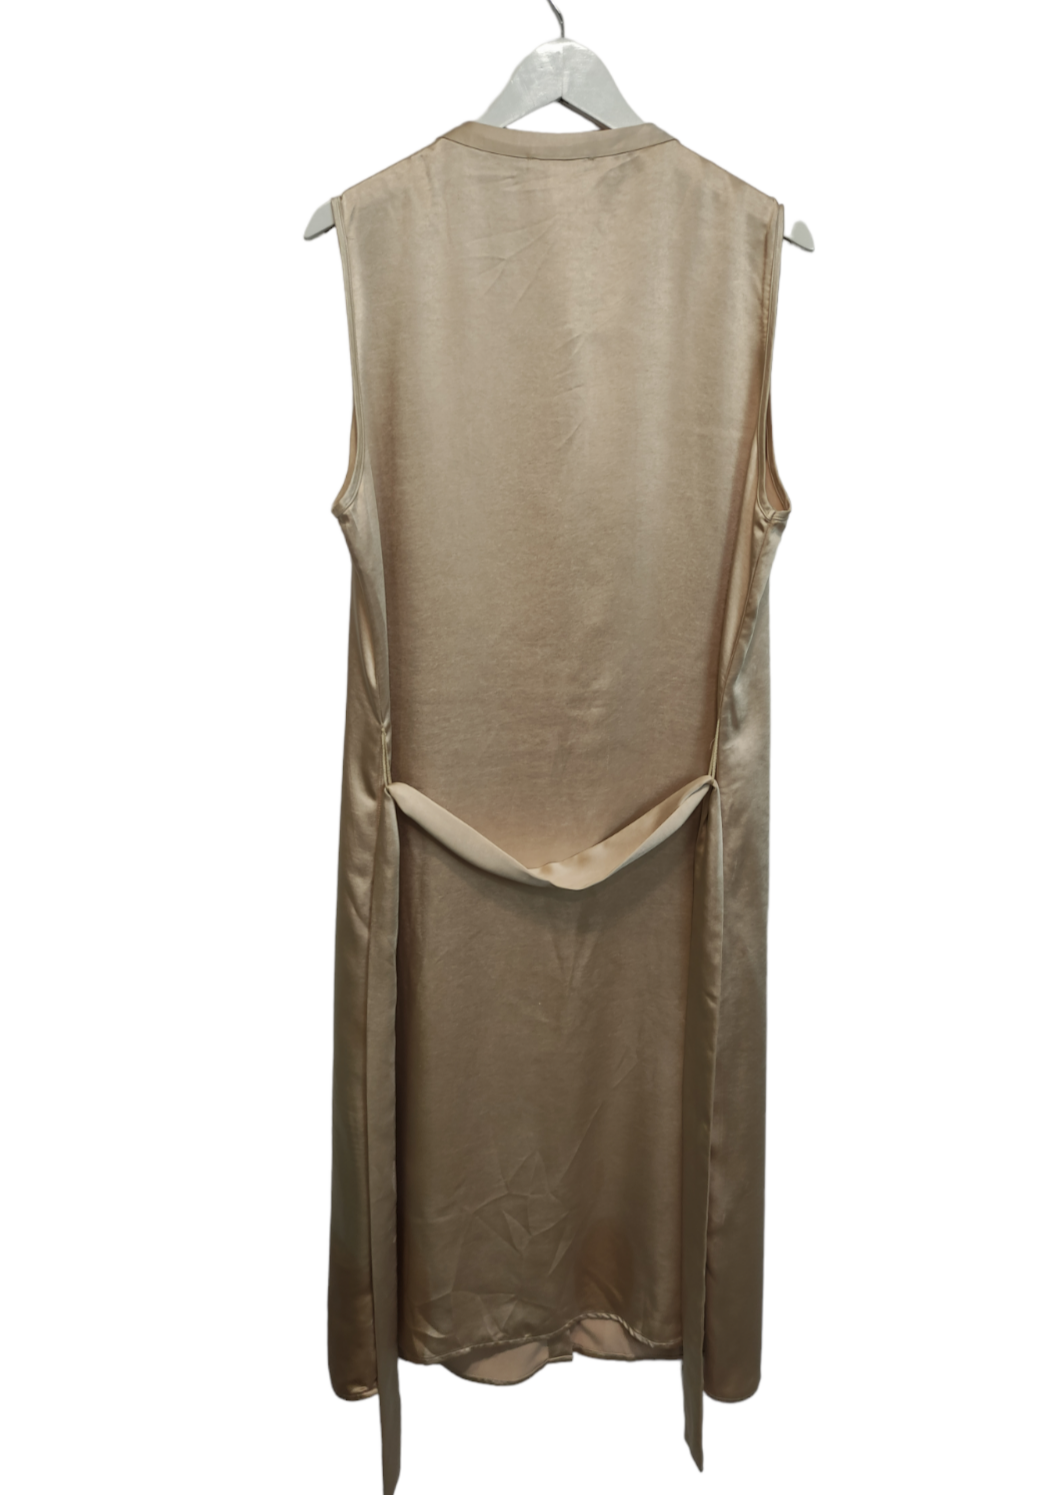 Σεμιζιέ Φόρεμα LOVE COPENHAGEN σε Σαμπανιζέ Χρώμα (Large)